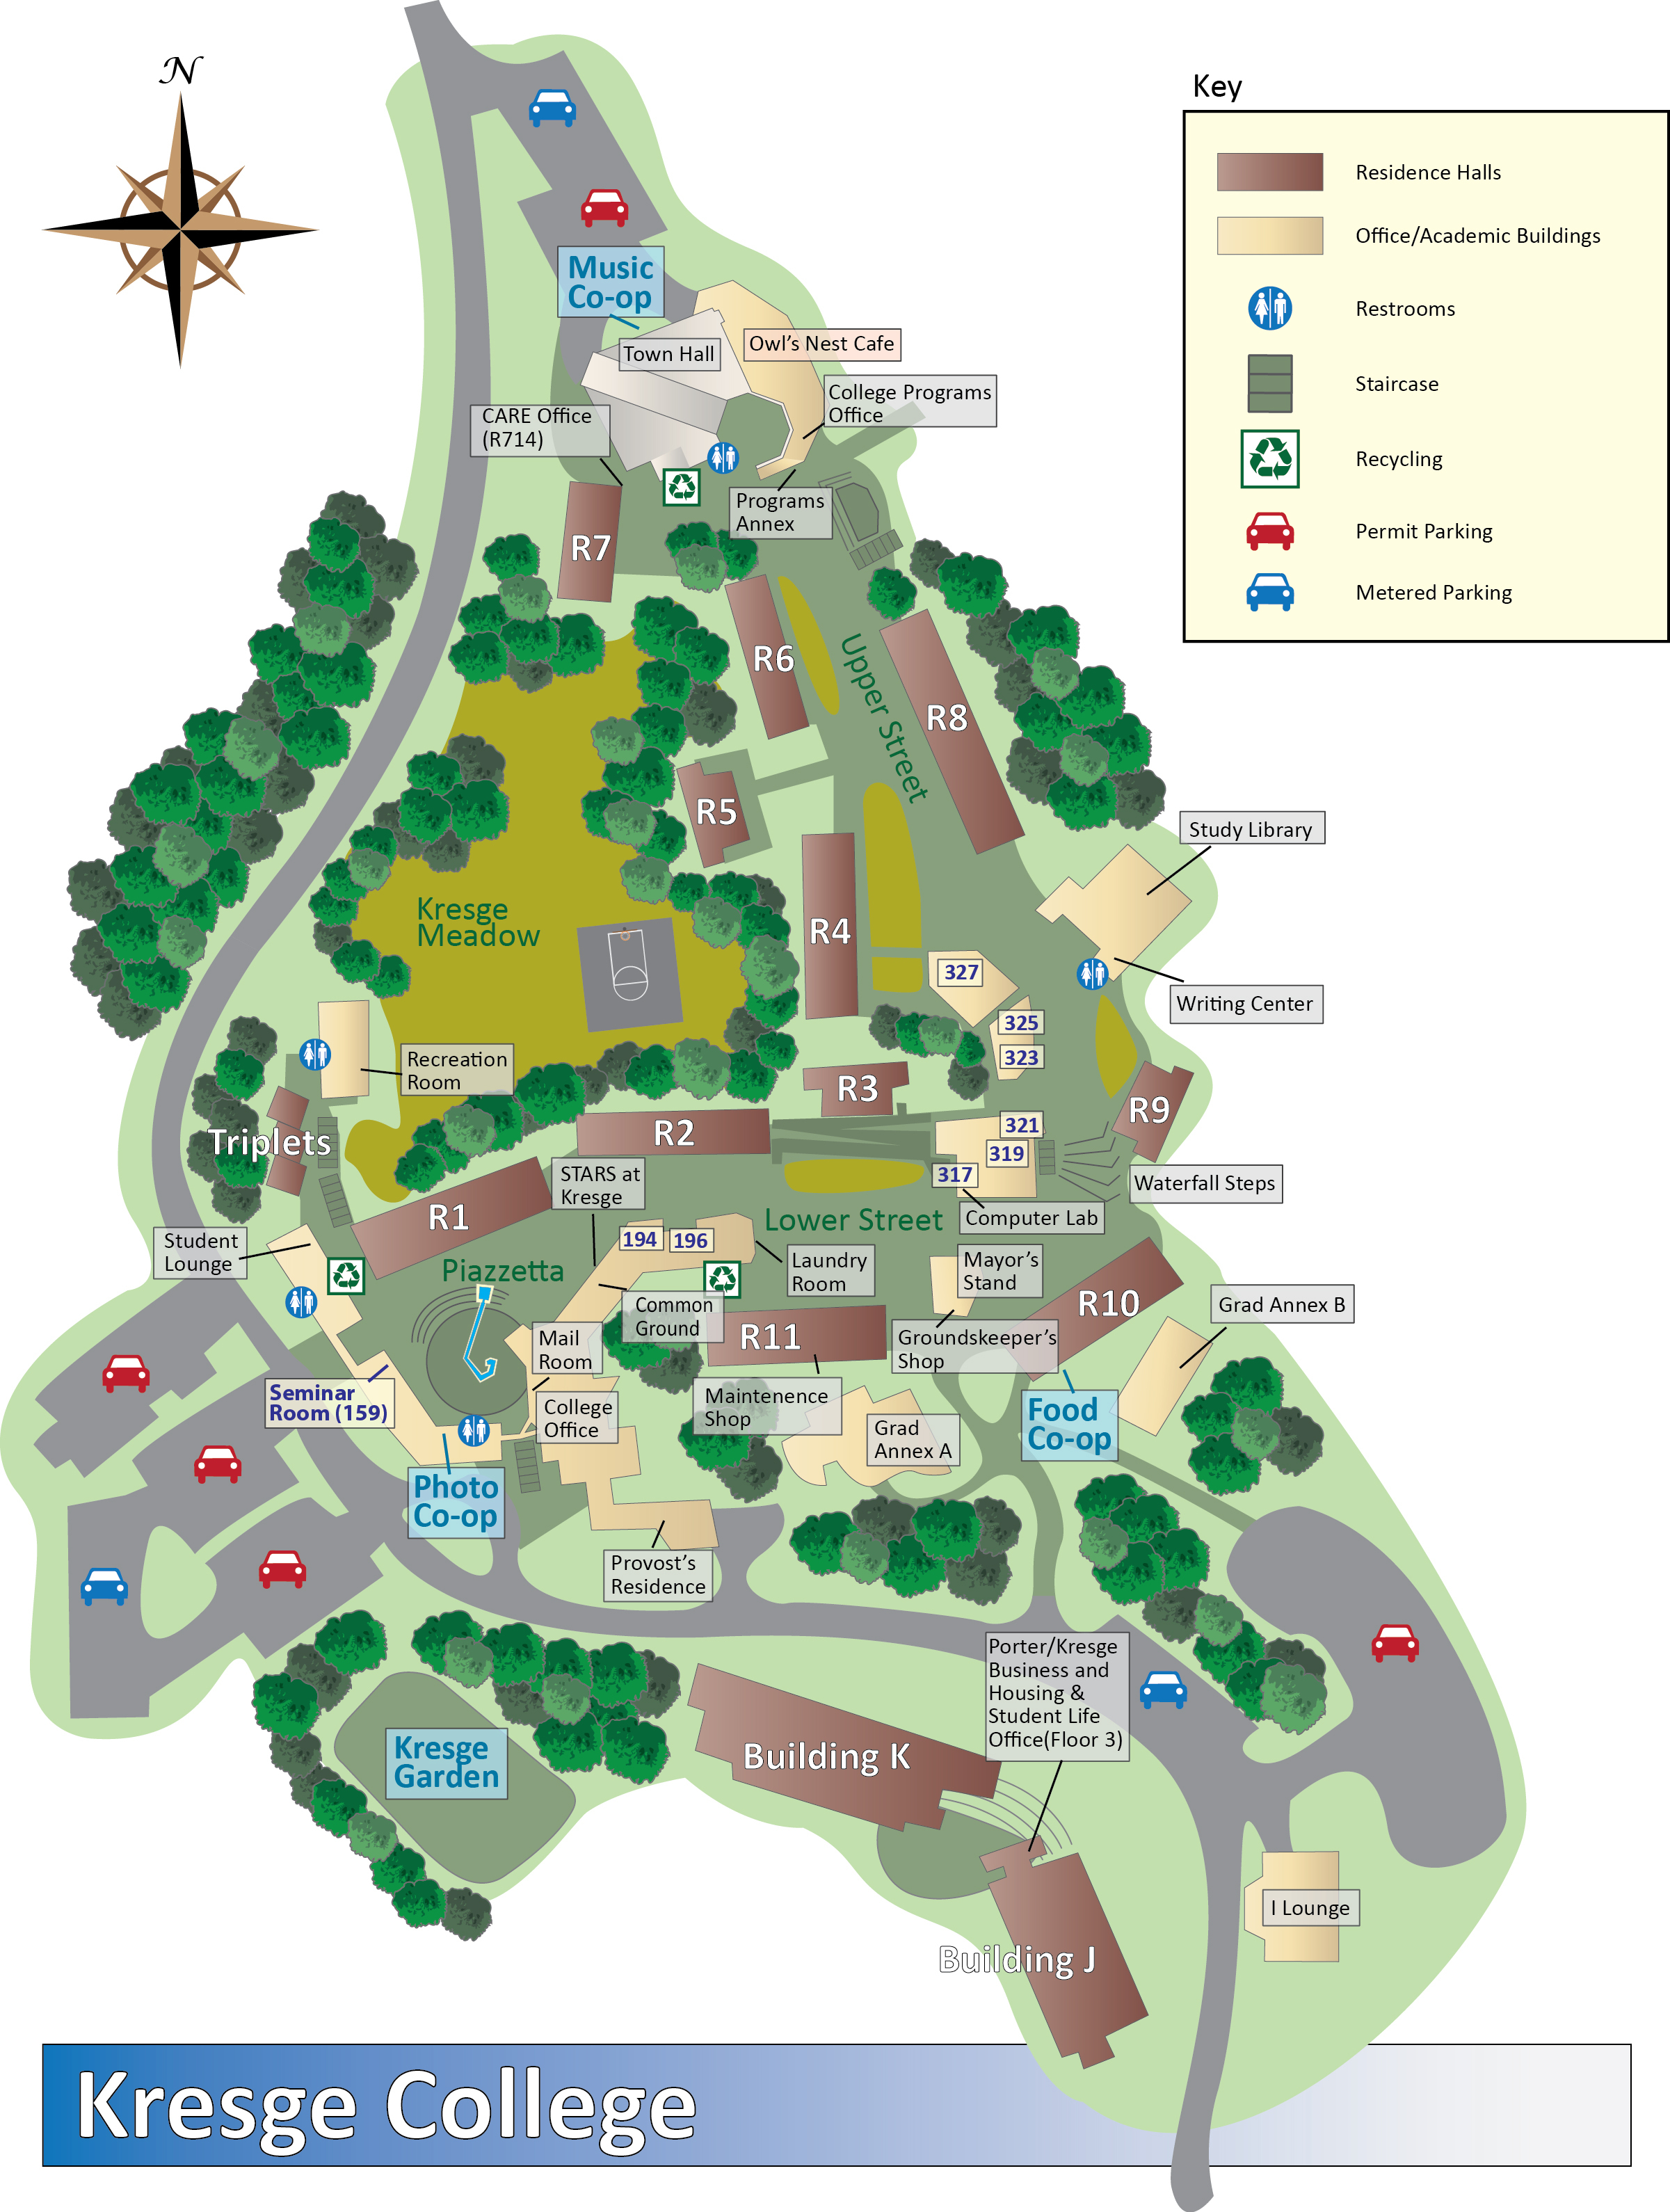 Kresge Maps And Directions - University Of California Santa Cruz Campus Map